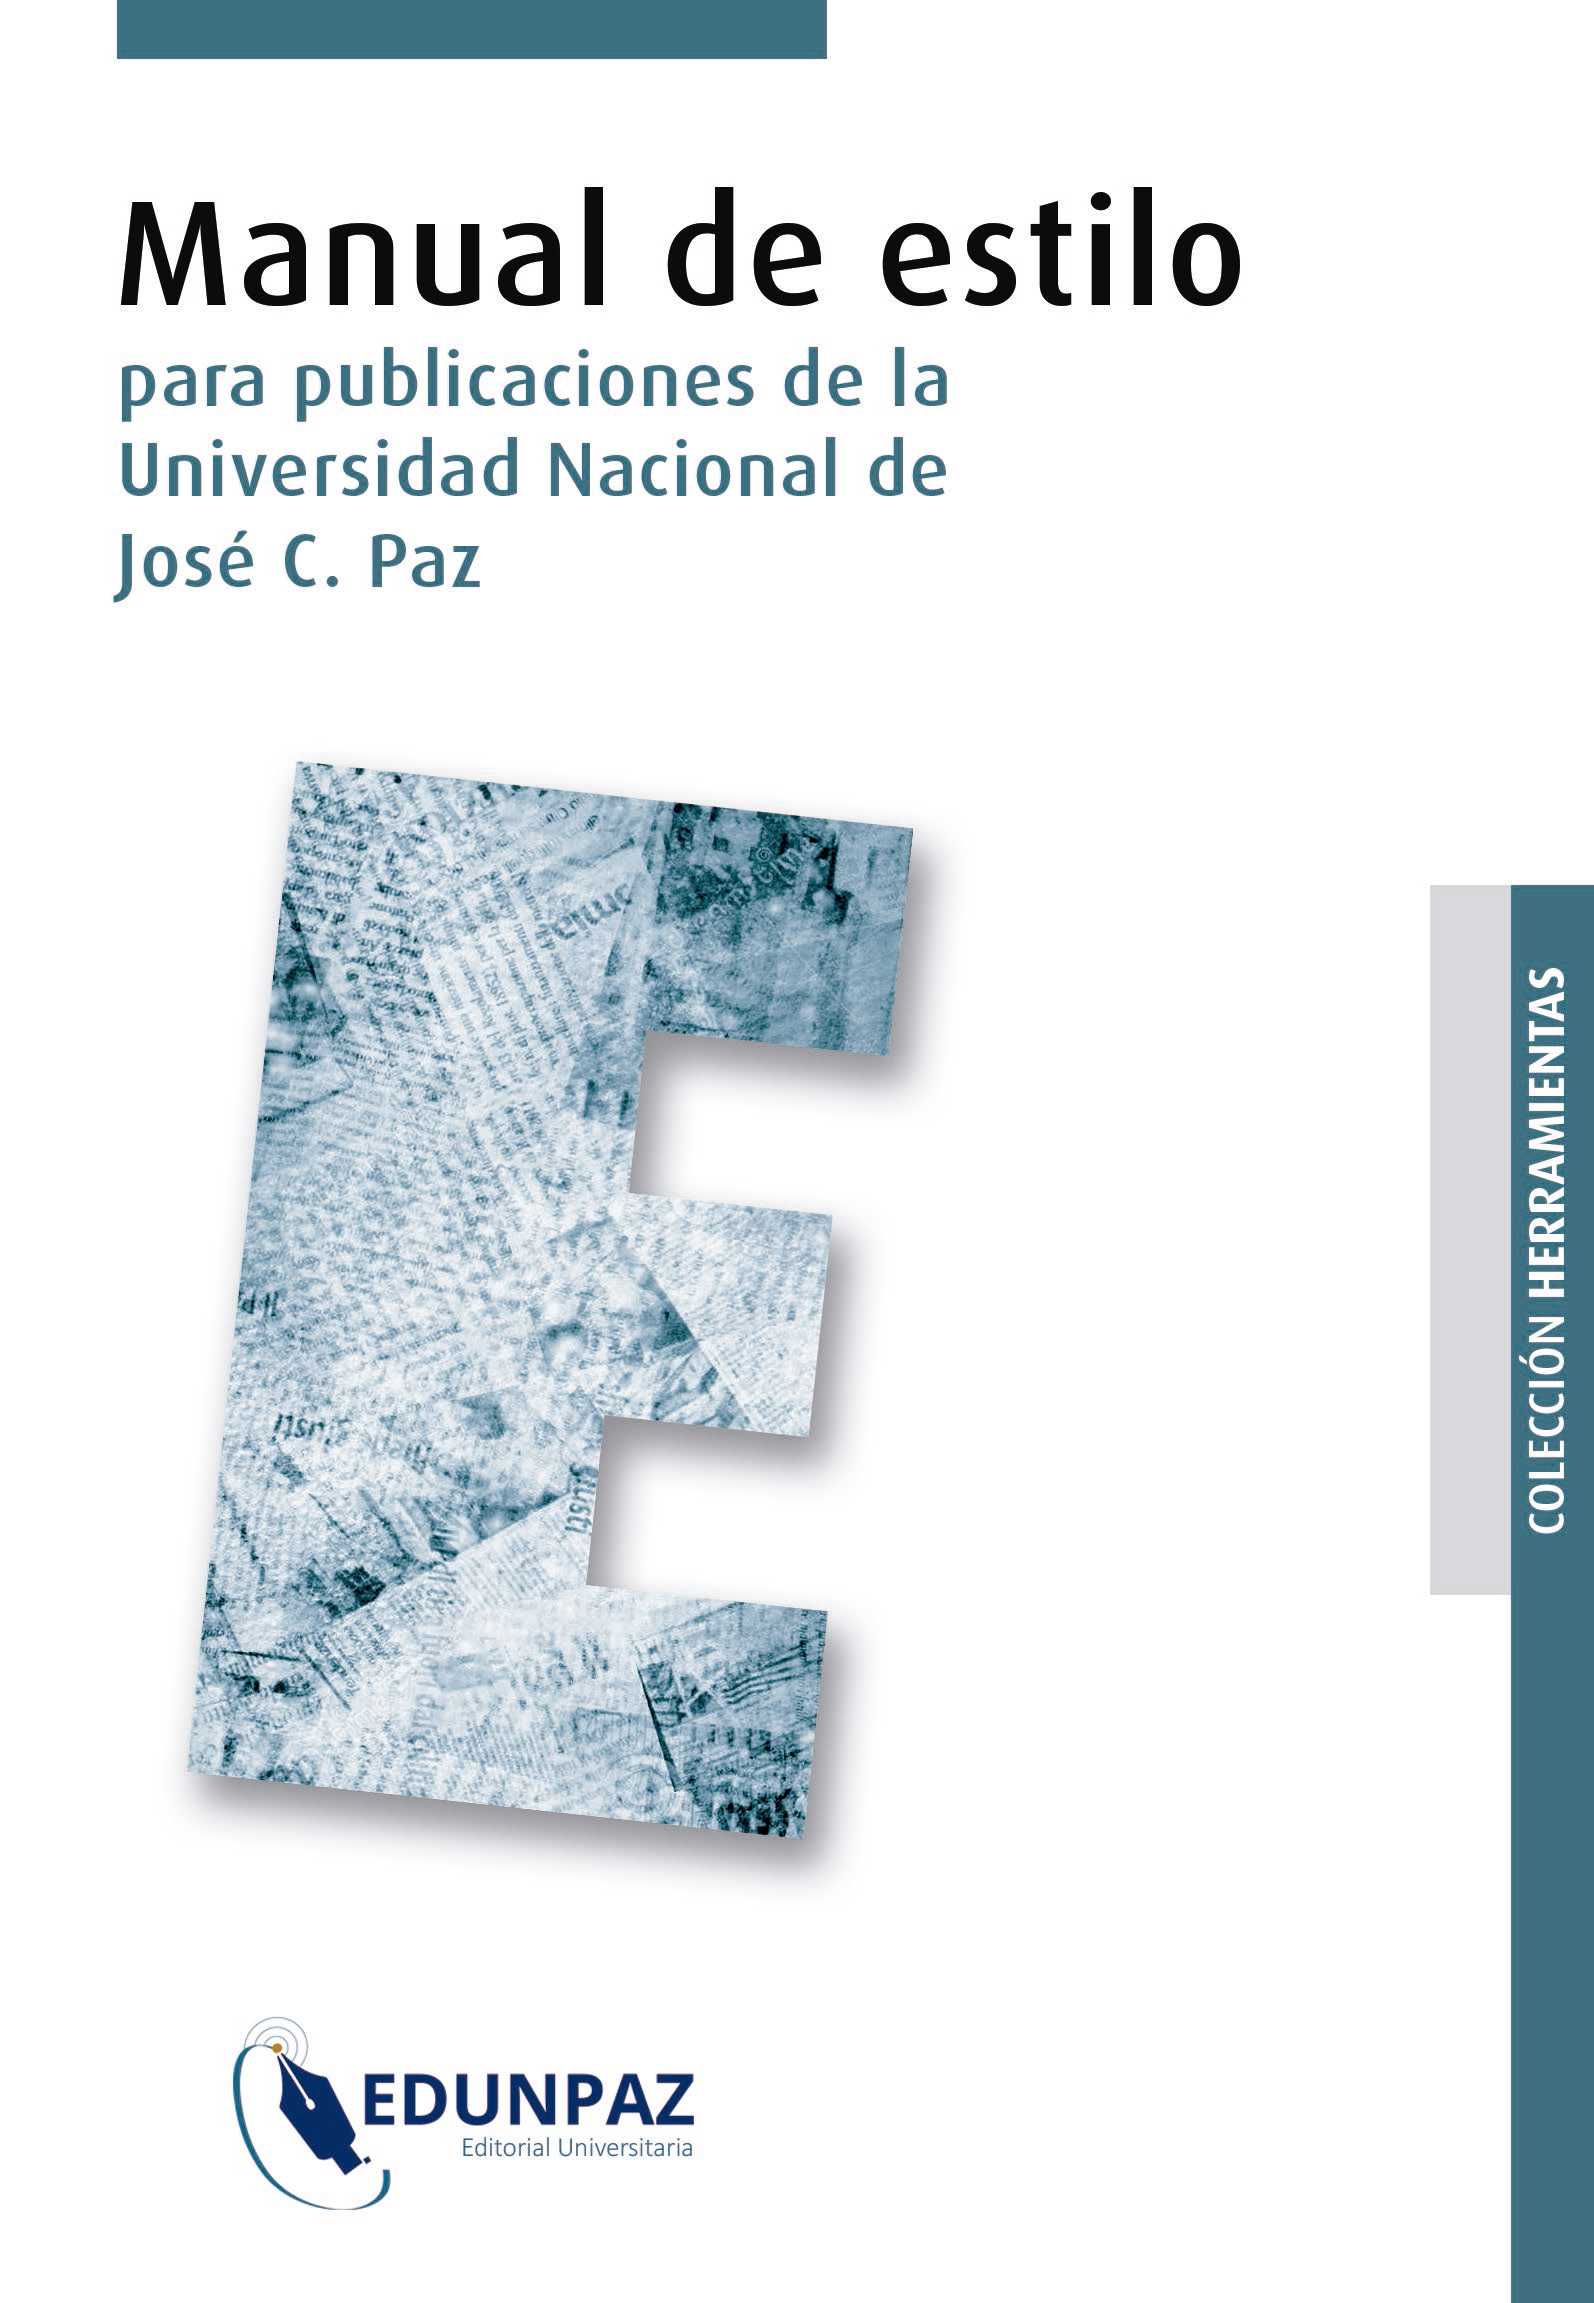 Manual de estilo: para publicaciones de la Universidad Nacional de José C. Paz